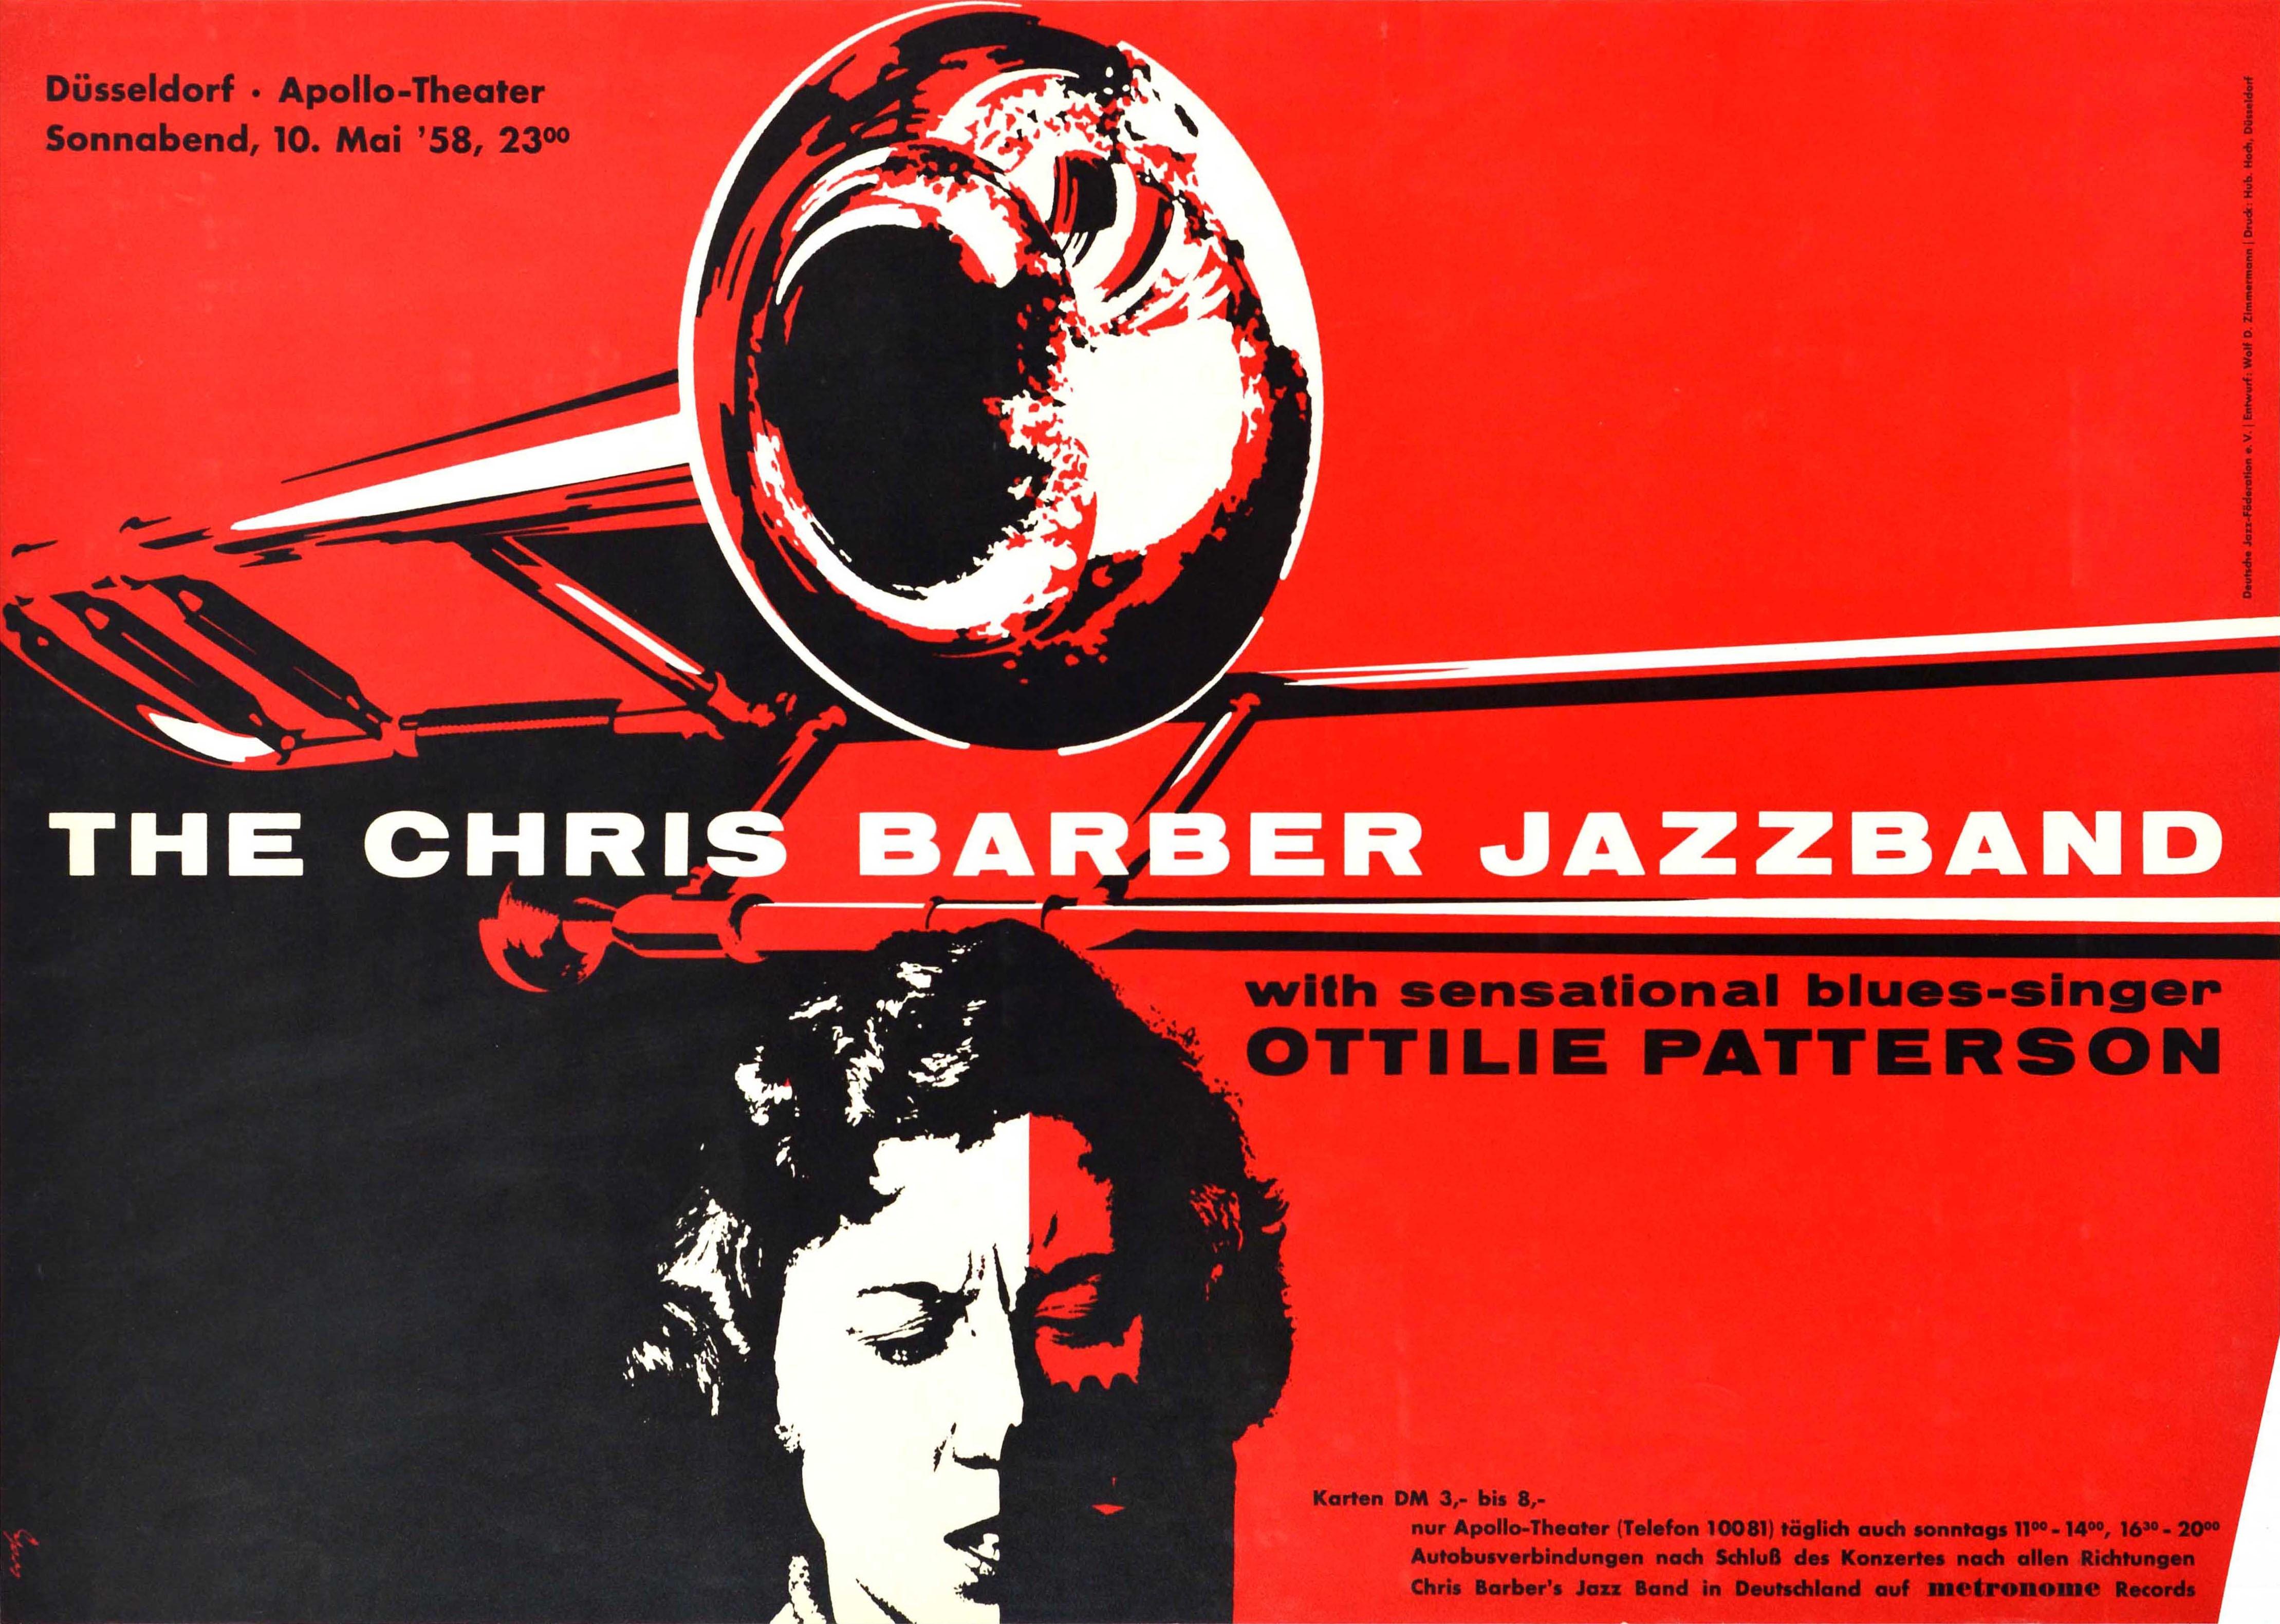 Original-Werbeplakat für ein Konzert der Chris Barber Jazzband mit der sensationellen Bluessängerin Ottilie Patterson im Düsseldorfer Apollo Theater am 10. Mai 1958. Großartiges Design mit einem Bild der nordirischen Bluessängerin Anna Ottilie